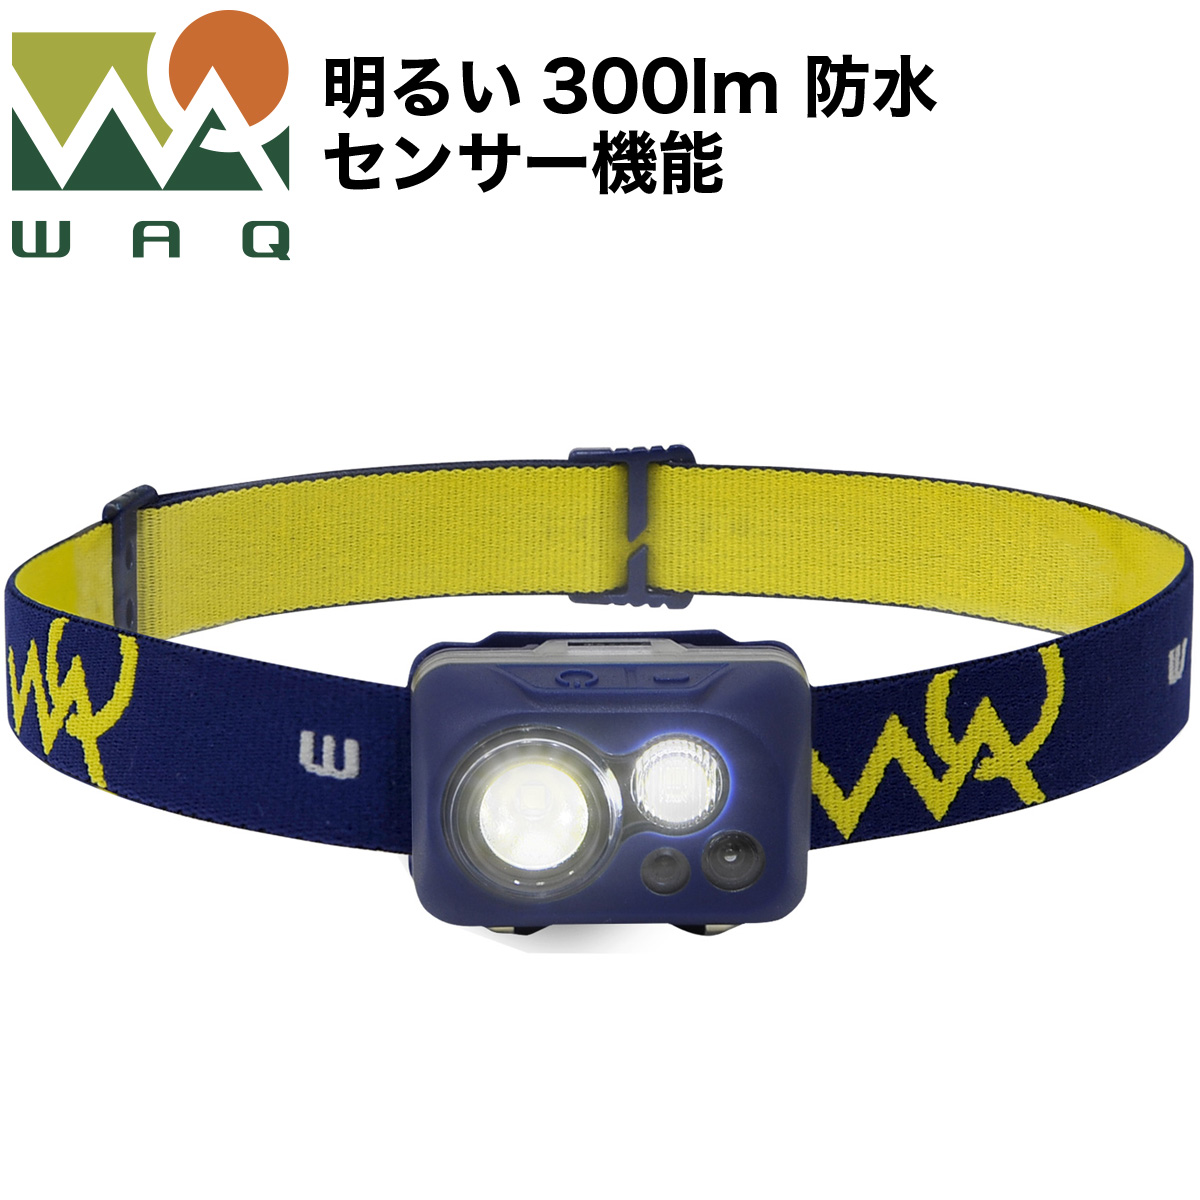  ヘッドライト LED 防水 センサー 登山 釣り キャンプ 防災 災害対策 明るい 300ルーメン LEDヘッドライト ヘッドランプ LEDヘッドランプ LEDライト WAQ-H1